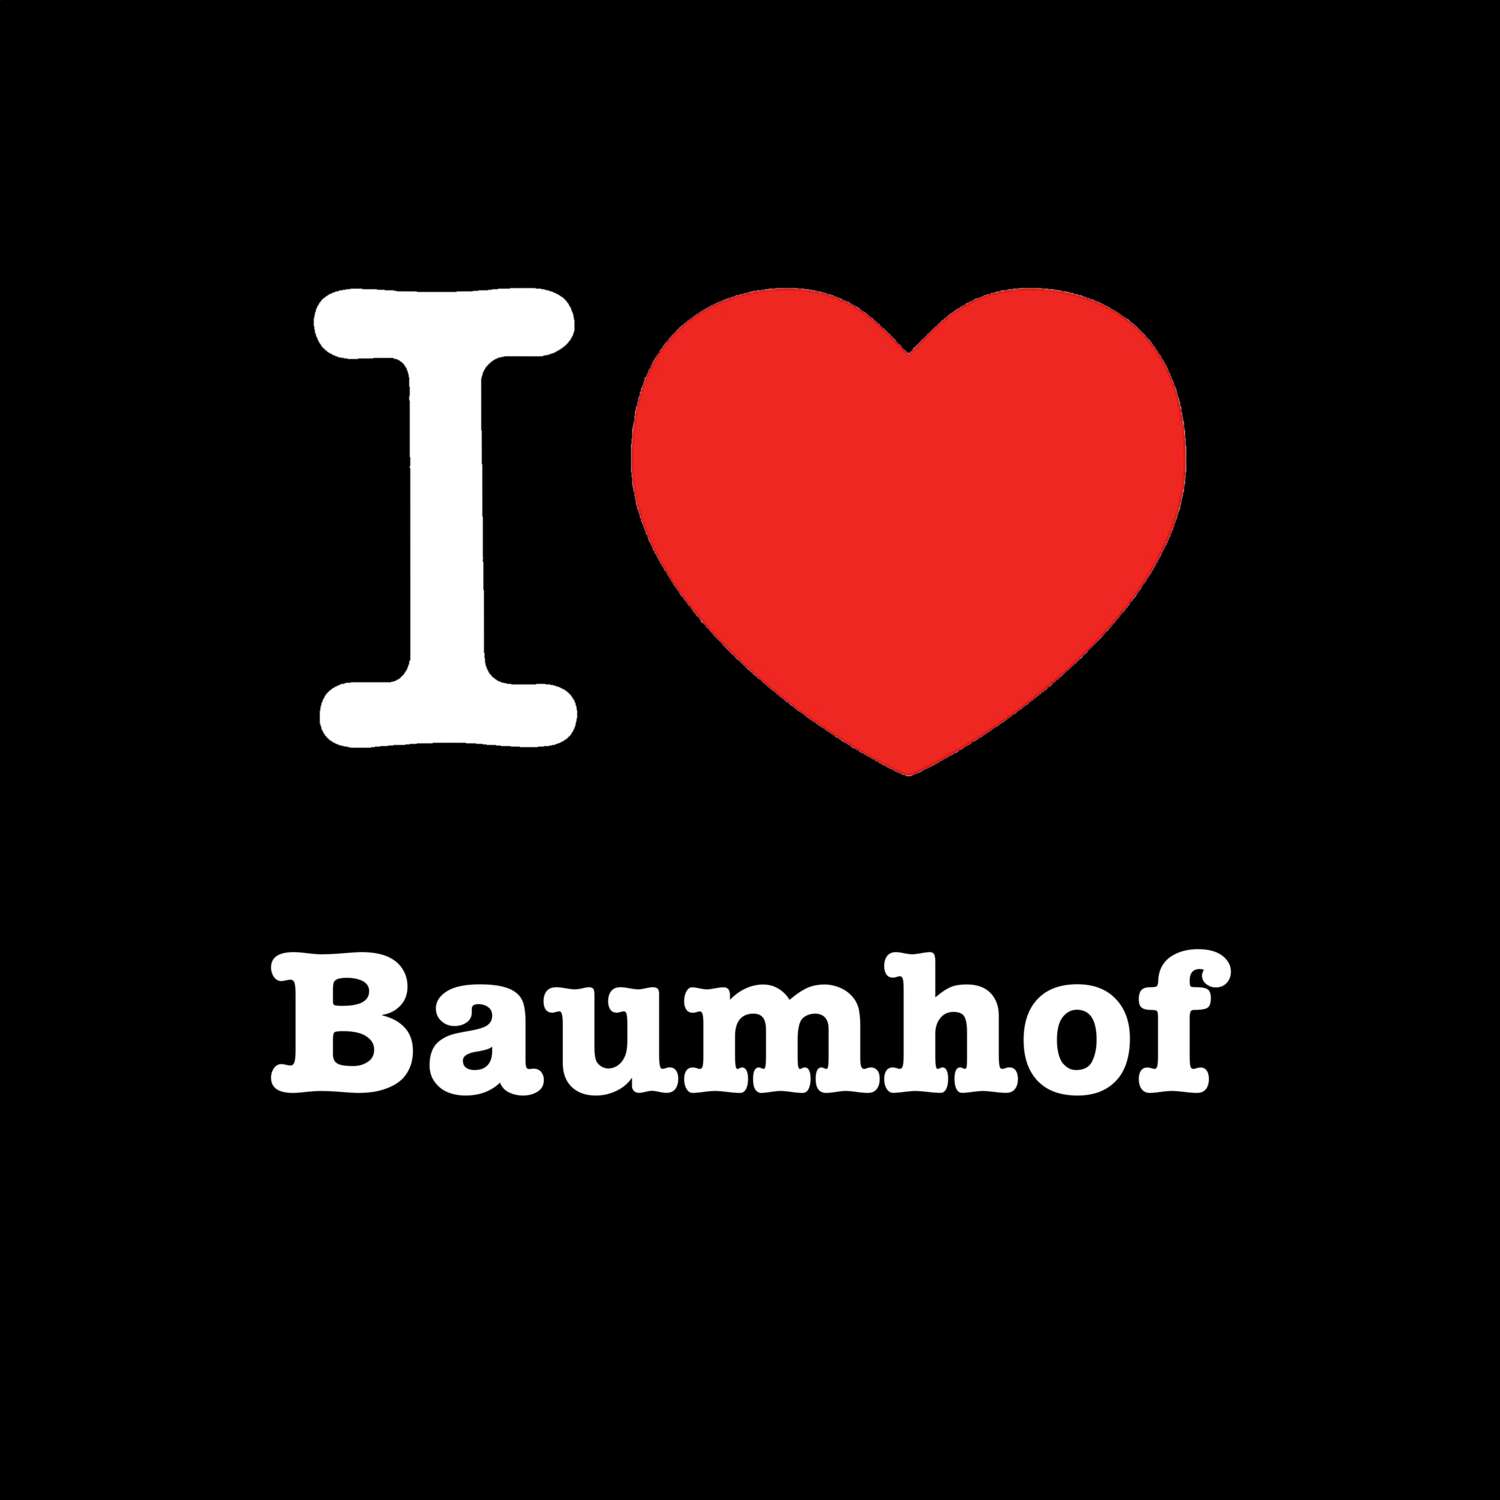 Baumhof T-Shirt »I love«